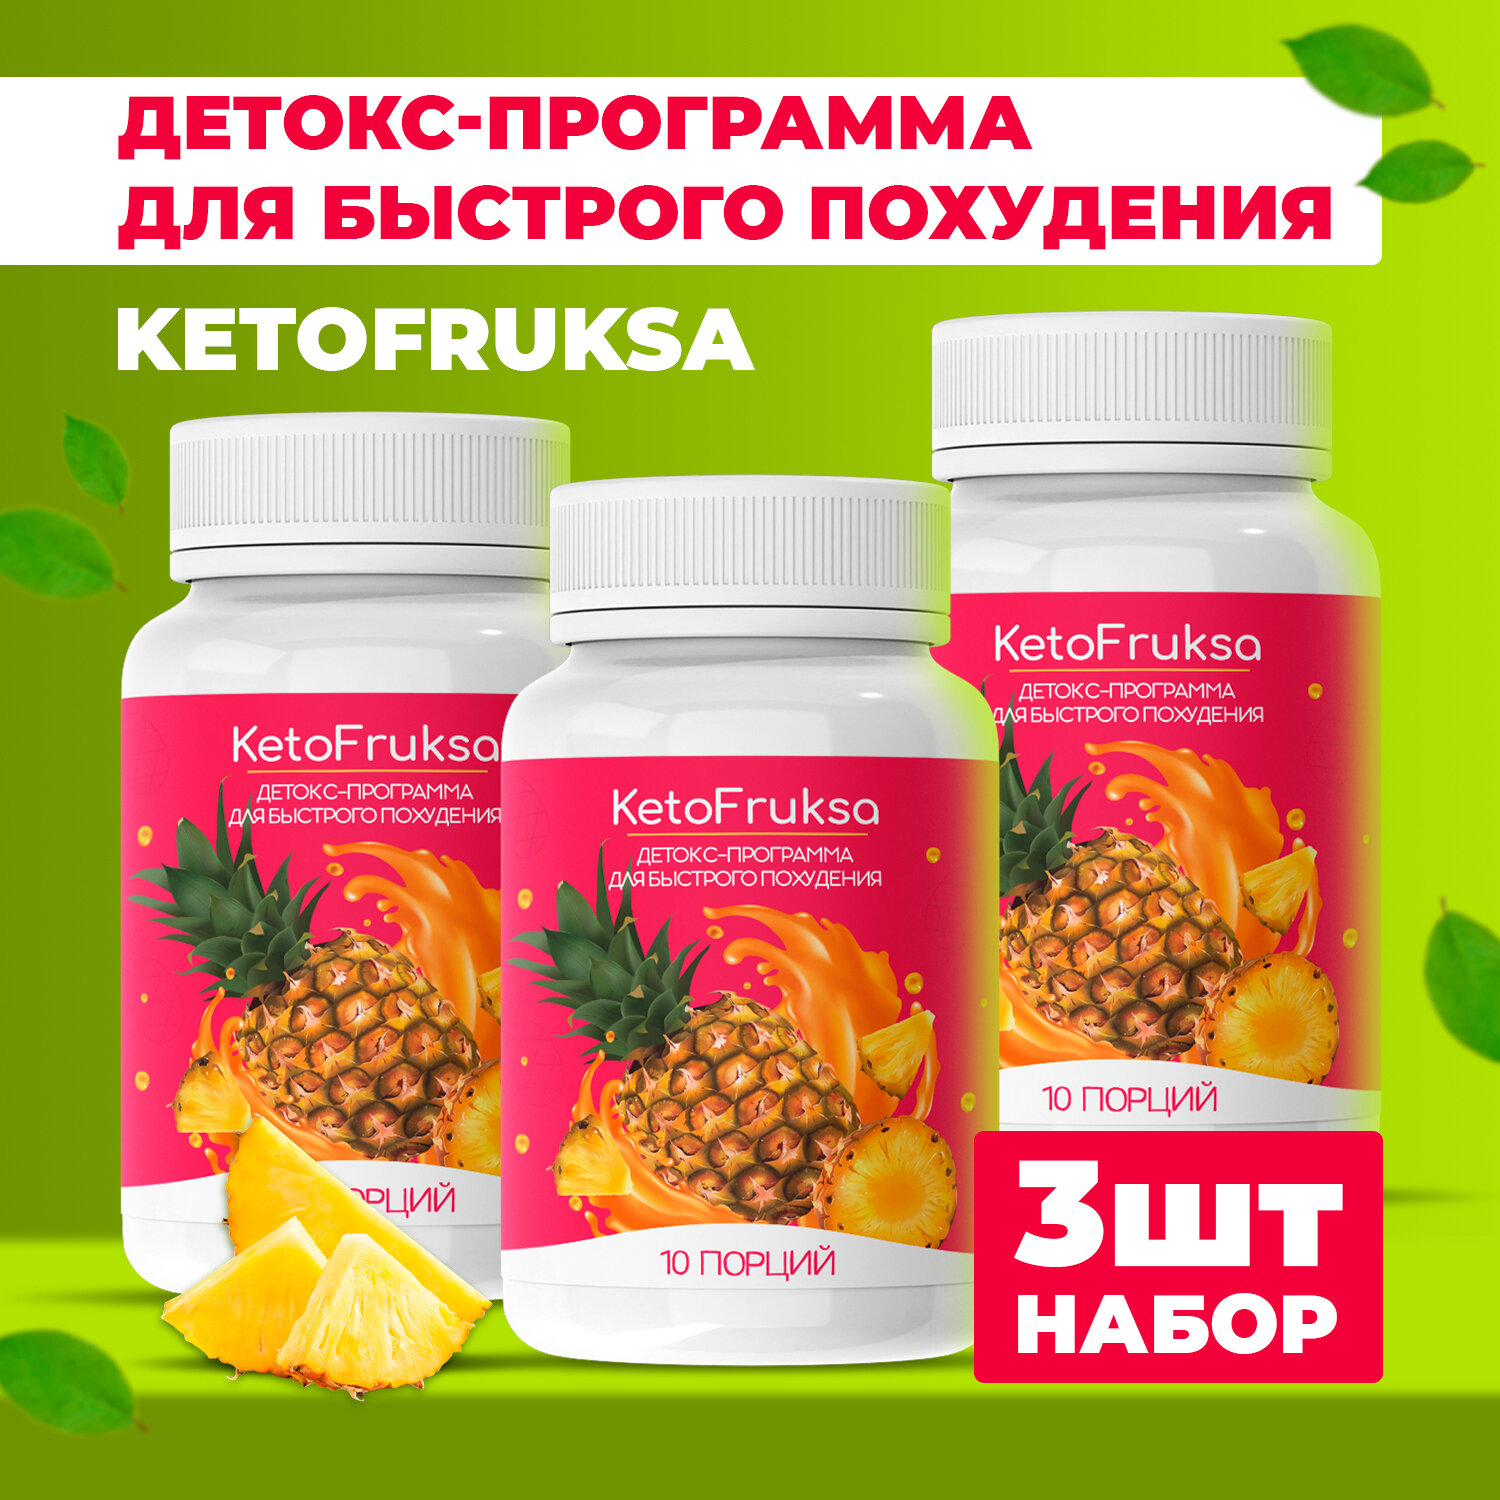 Средство для похудения "KetoFruksa"